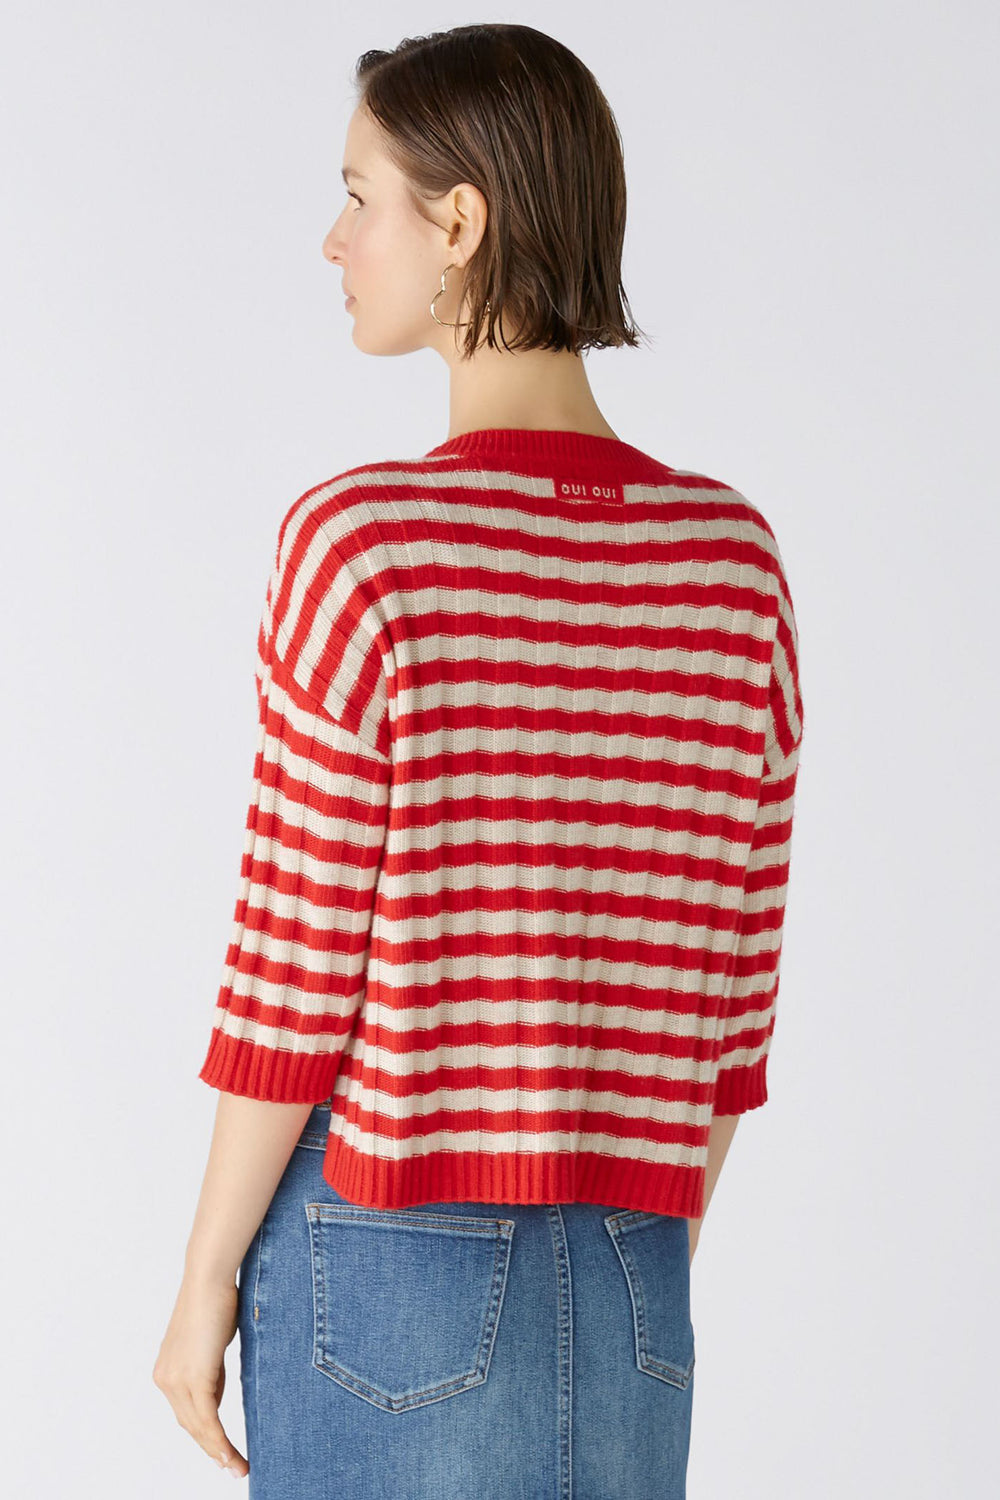 Oui 86632 Red Stone Stripe Chilli Jumper - Olivia Grace Fashion